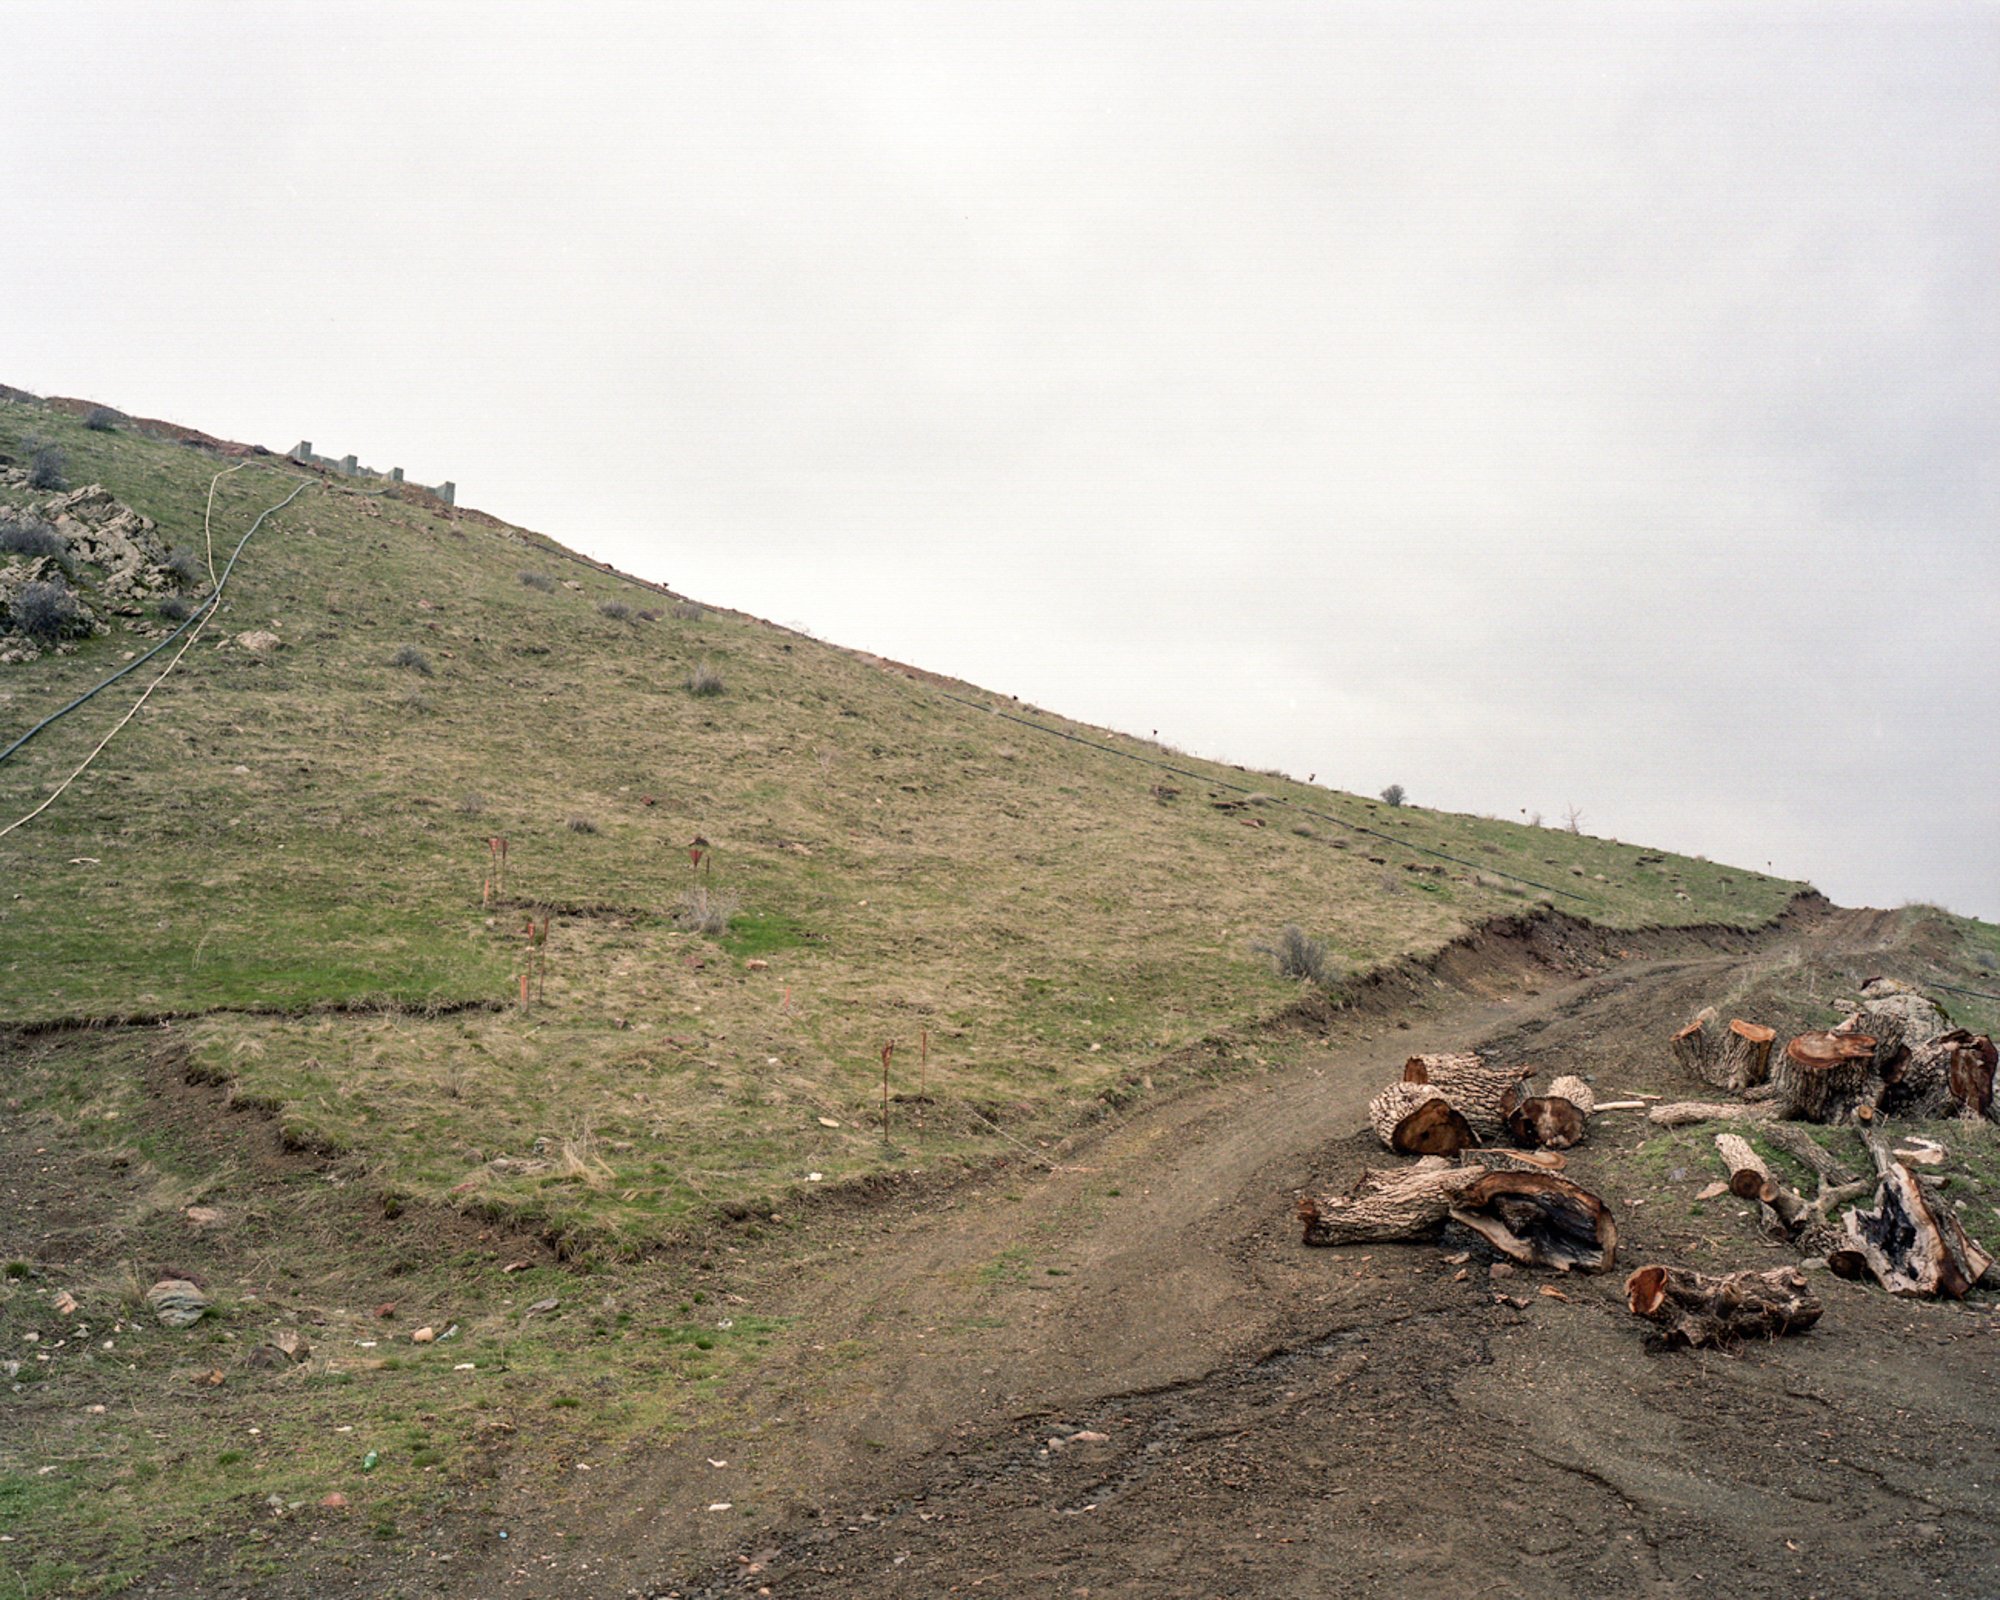  Minefield from Iran/Iraq war at Iranian border. Choman, Iraq. 